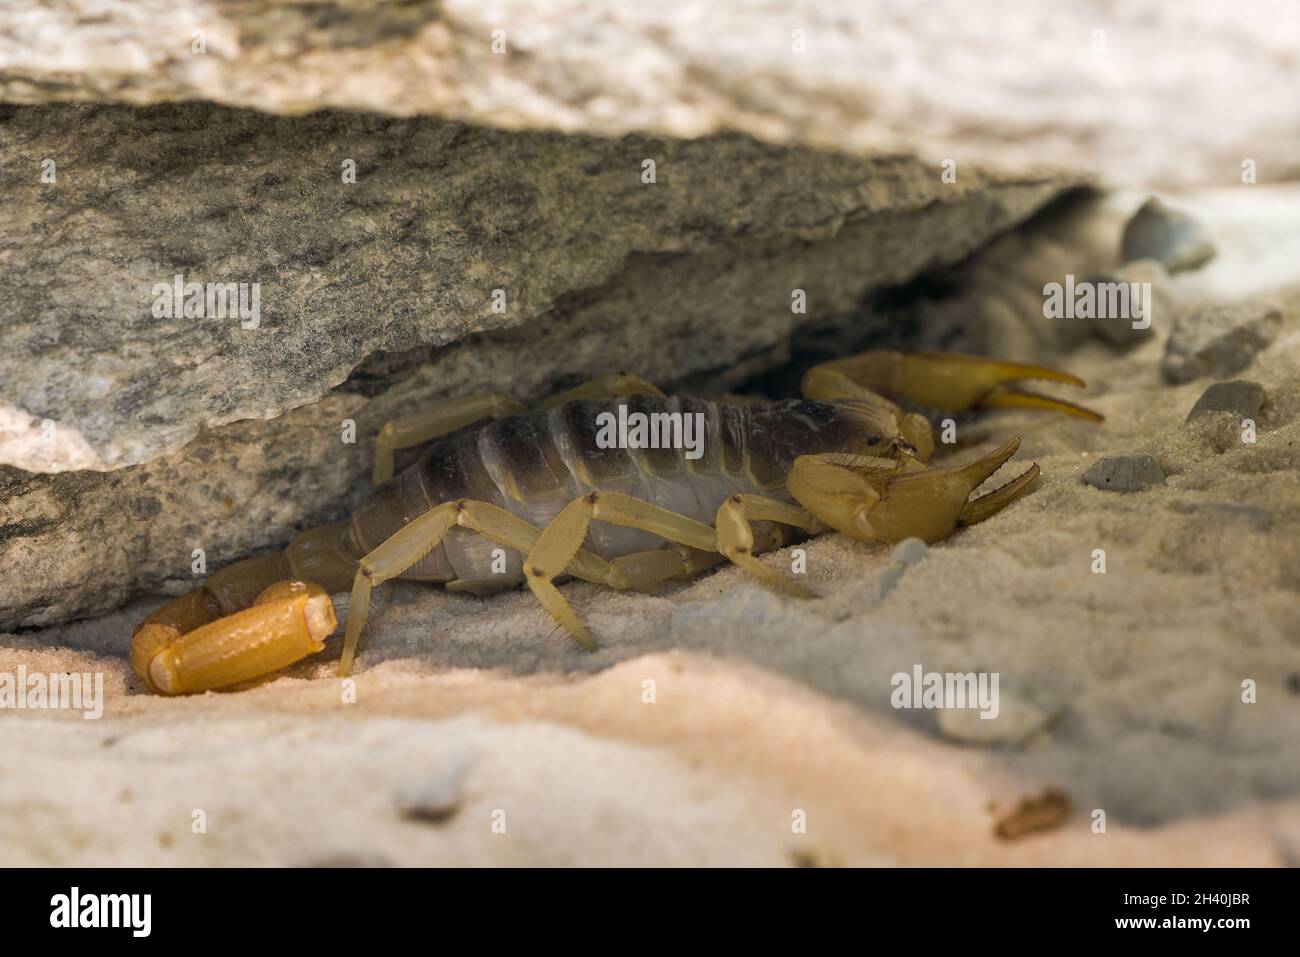 Arizona Desert Hairy Scorpion Stock Photo